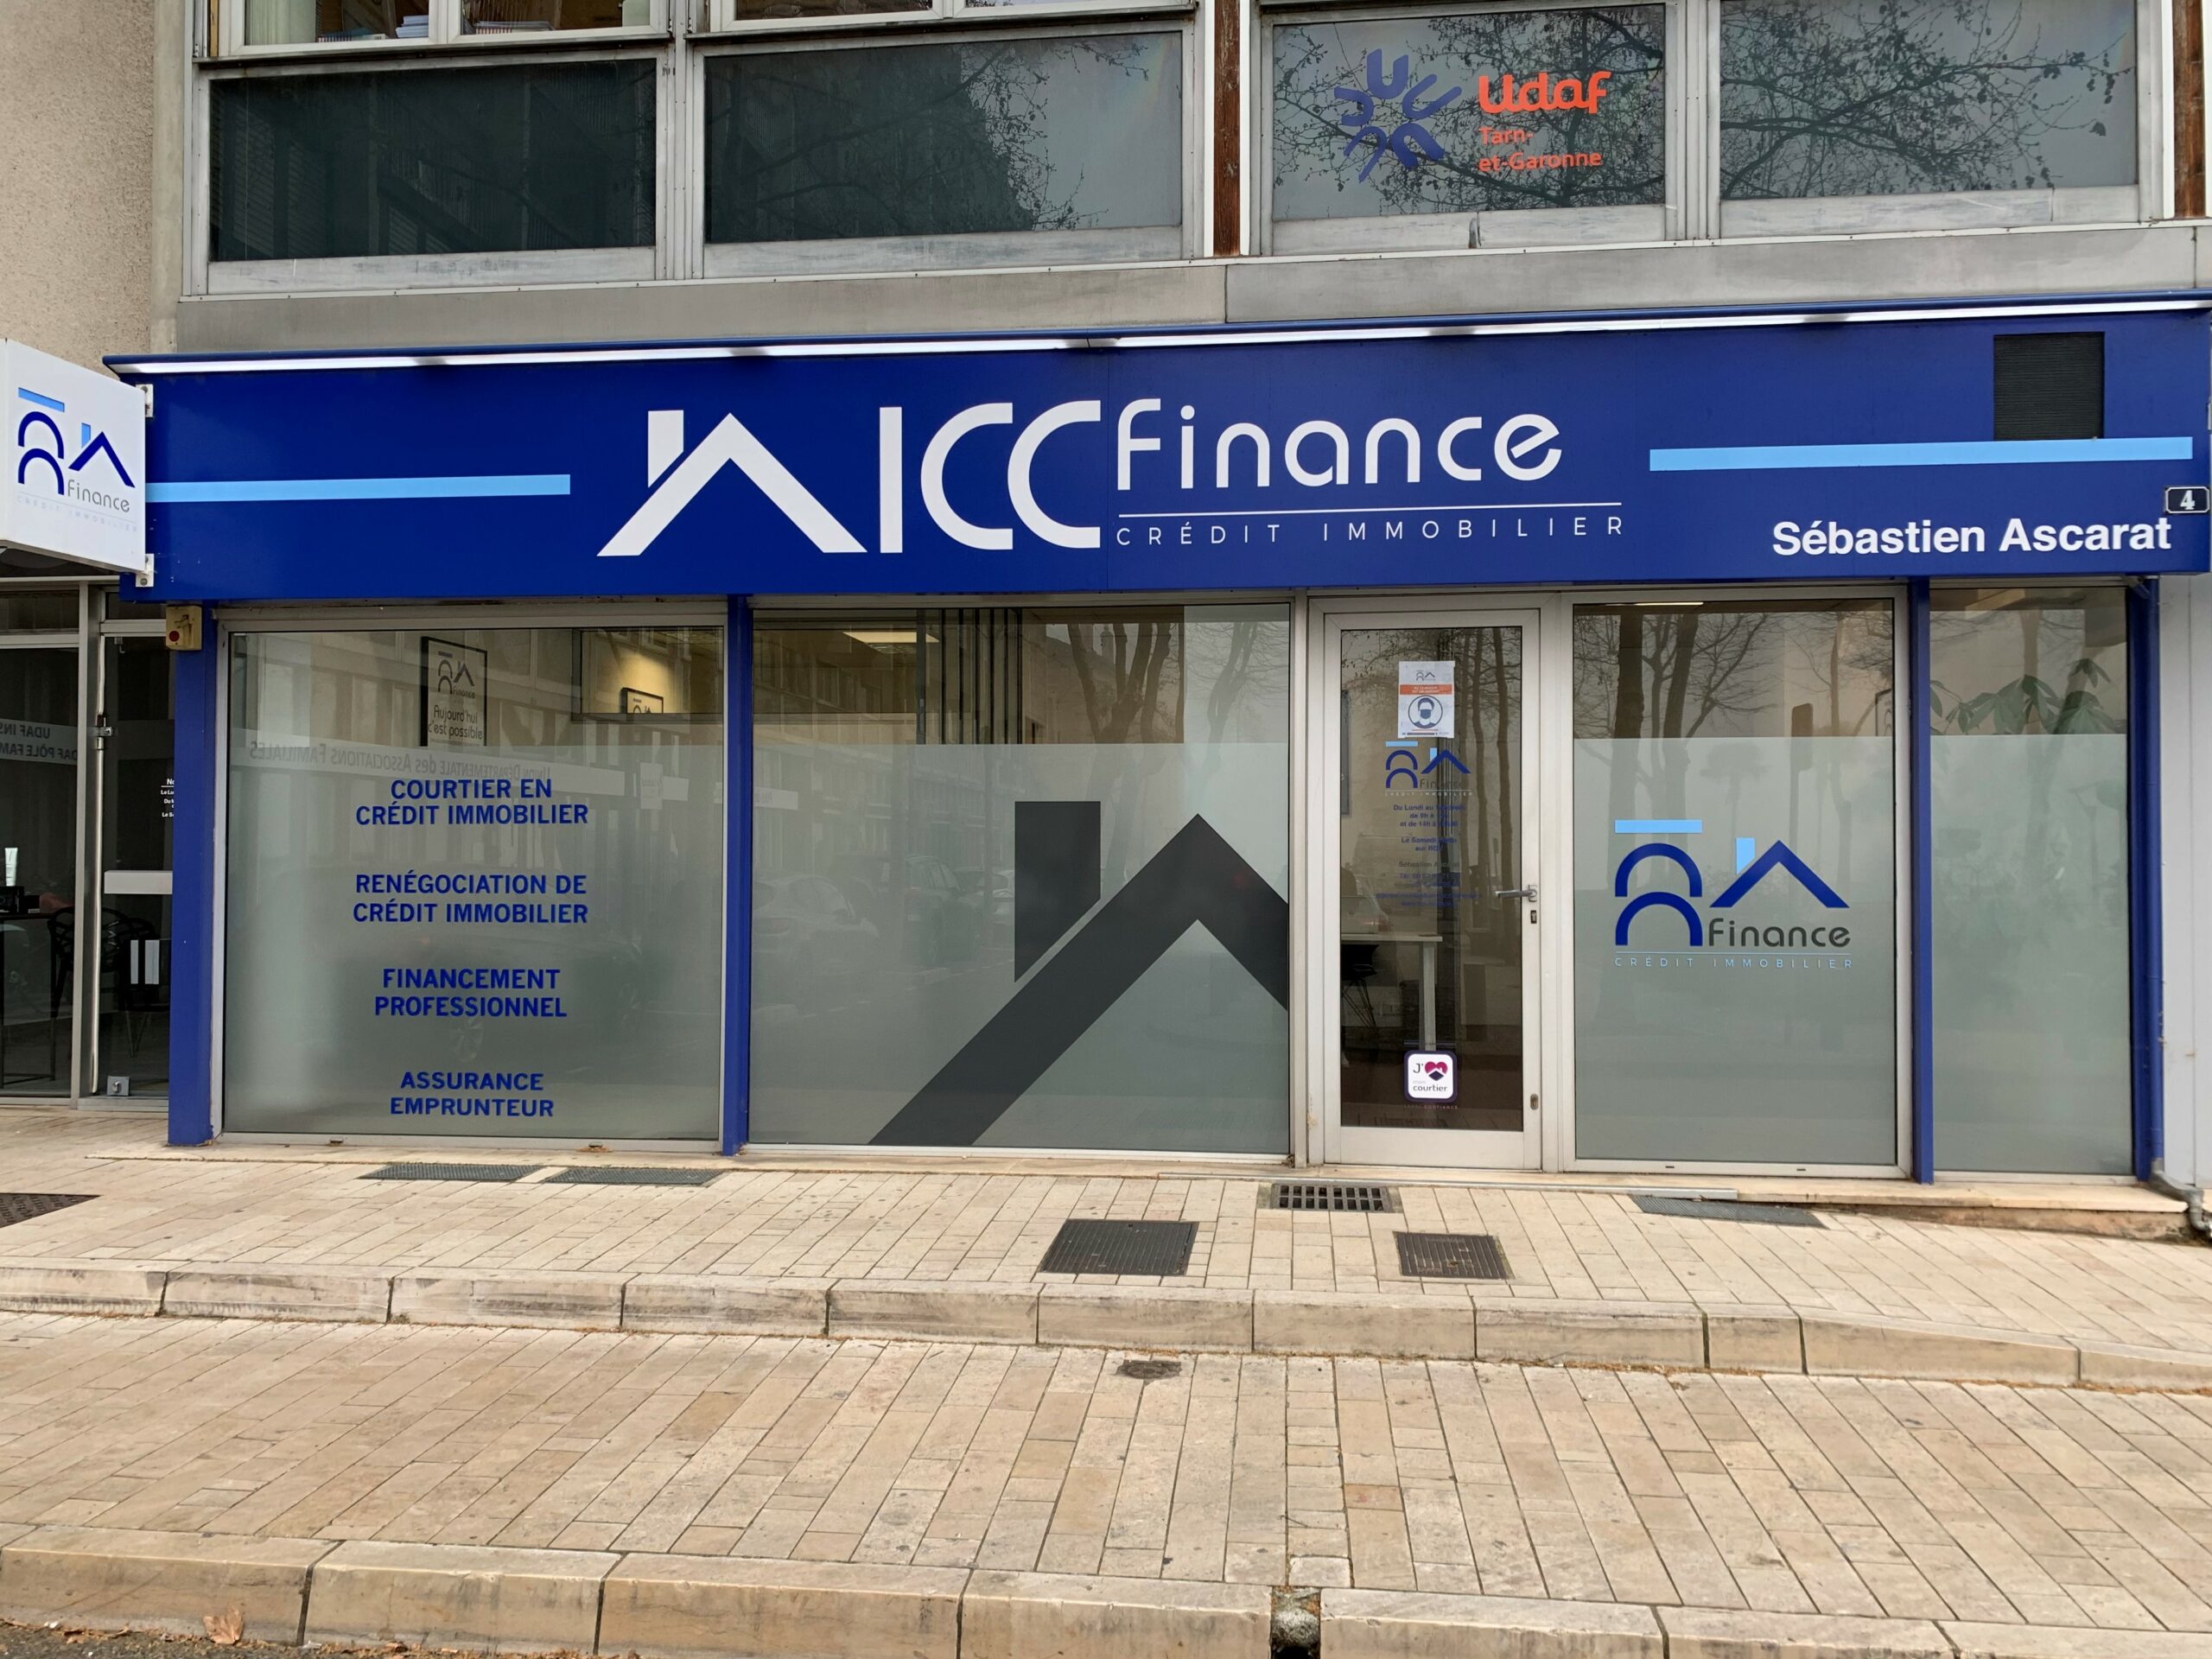 Exterieur ICC Finance Montauban Centre Courtier en credit immobilier